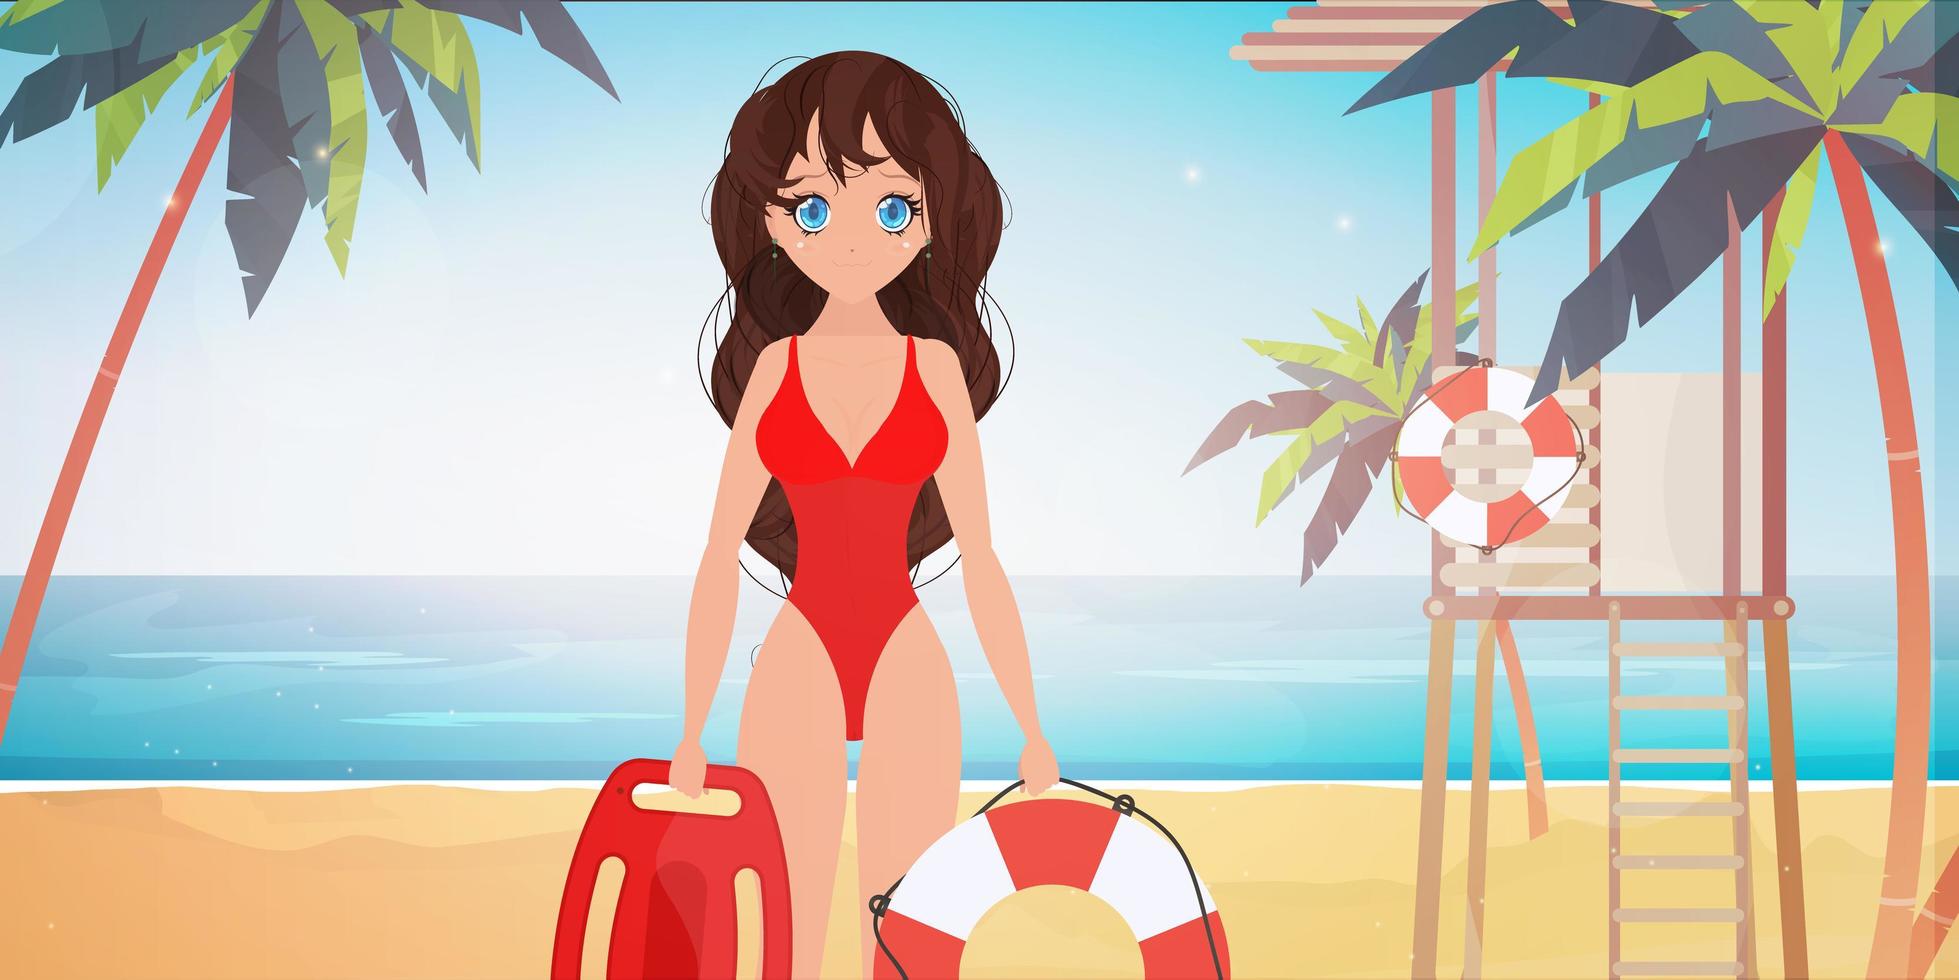 strand livräddare kvinna på stranden med palmer. flicka i en röd baddräkt. tecknad stil. vektor illustration.